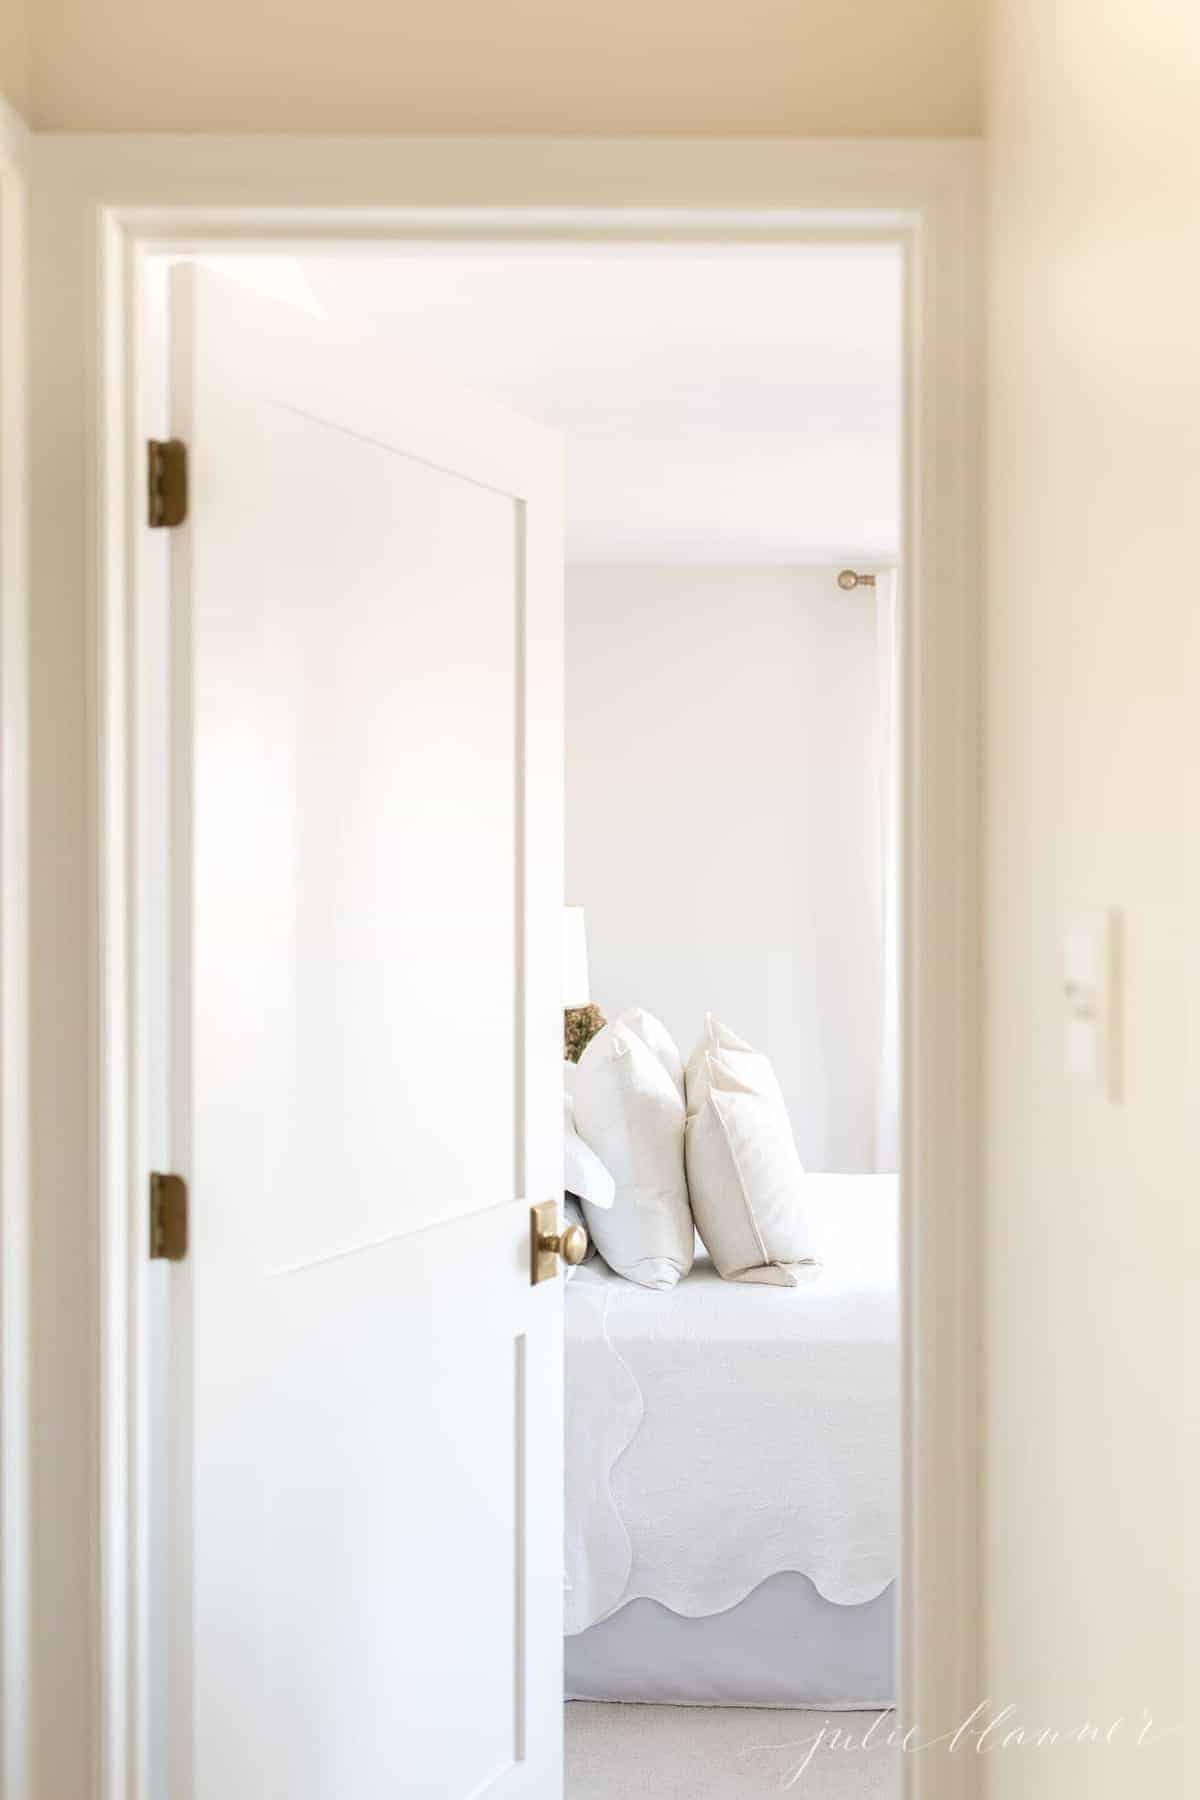 一扇白色的震动派室内门，带有黄铜门把手，通往卧室。